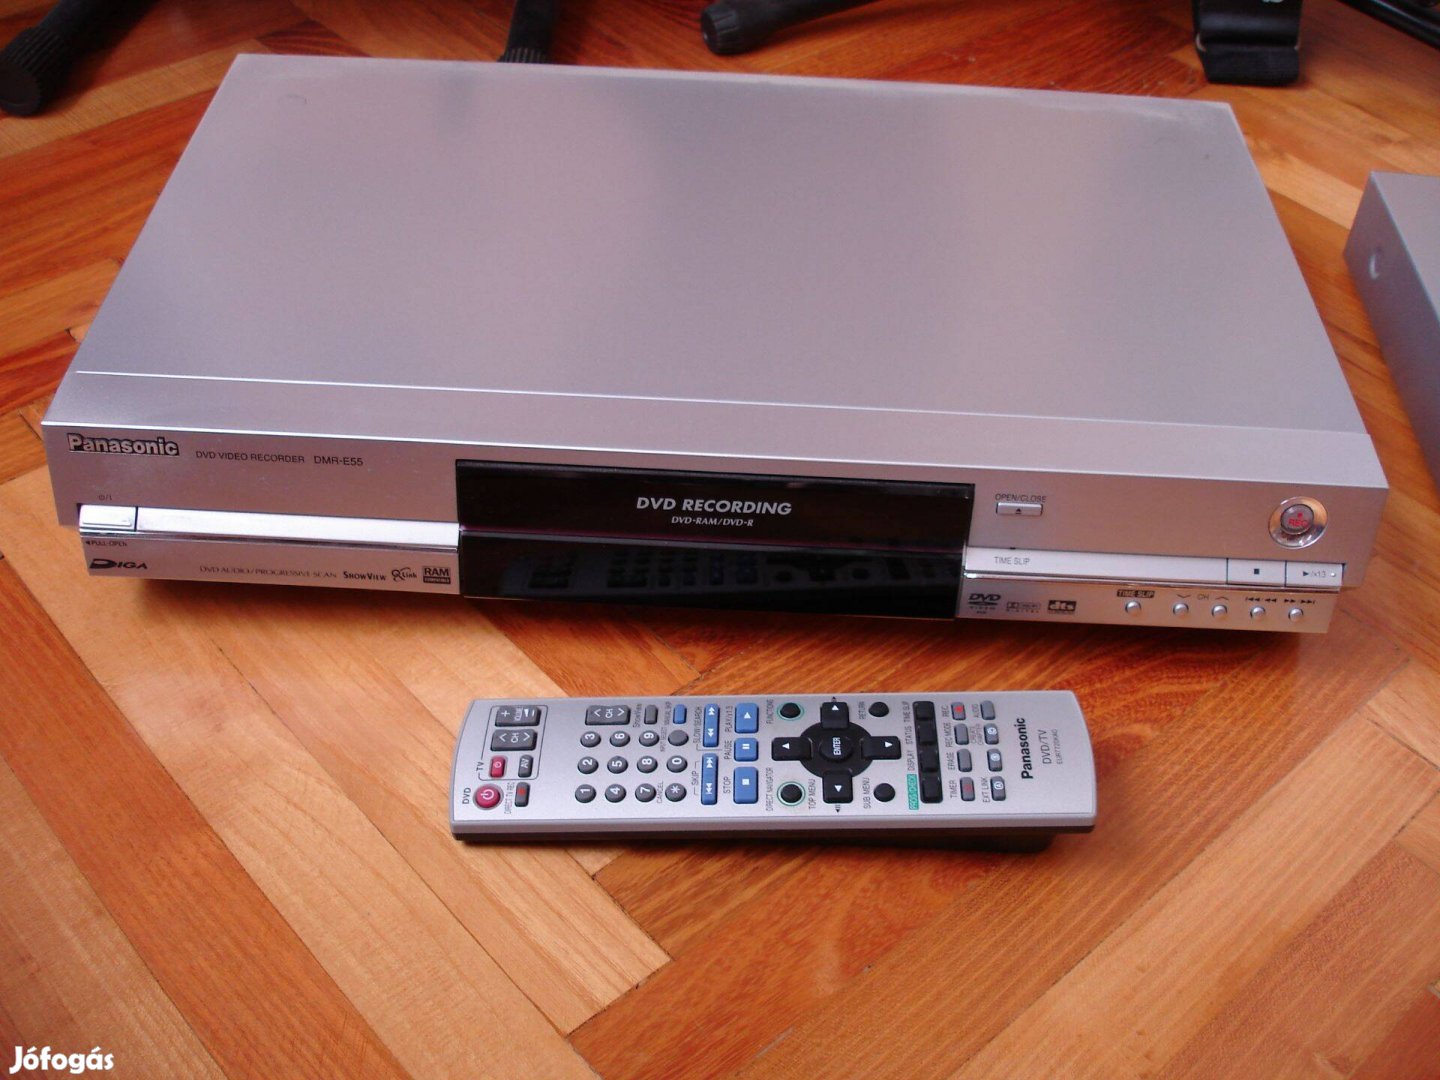 Panasonic dvd felvevő DMR-E55 dobozos, újszerű állapotban